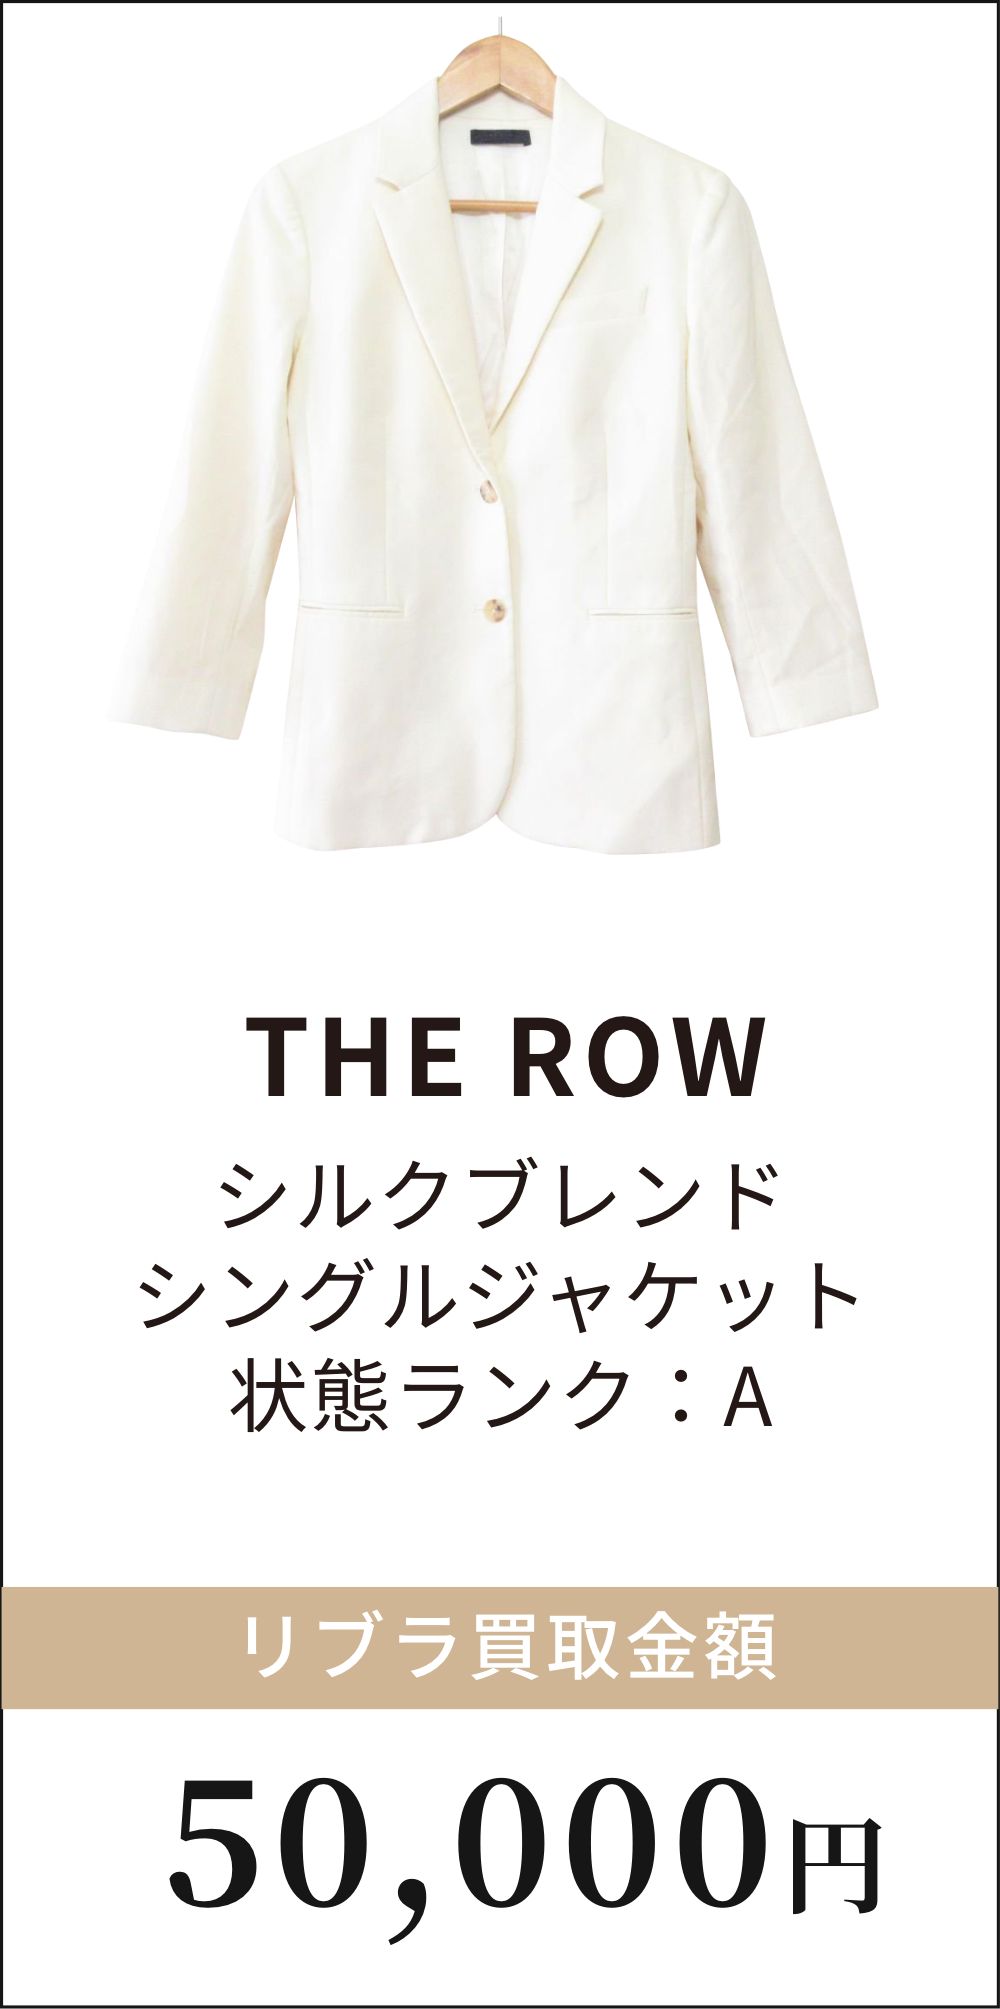 THE ROW シルクブランドシングルジャケット 高価買取例